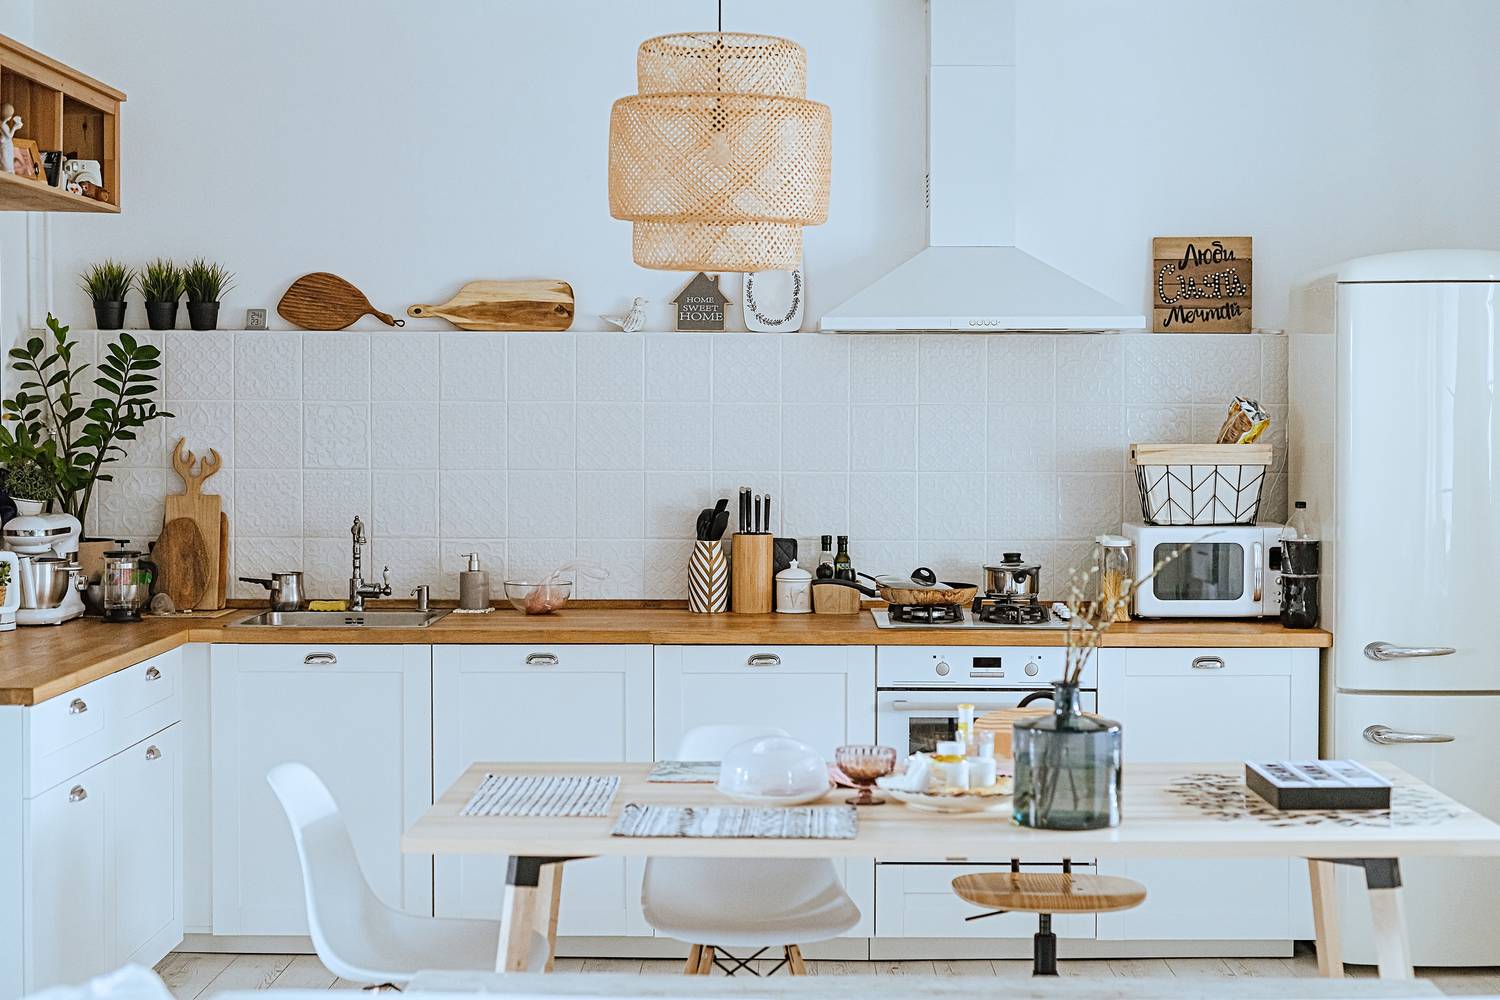 A fehér konyhát remekül ötvözheted különféle faborítású bútorokkal, konyhai eszközökkel, amivel természetes, letisztult hatást érhetsz el.